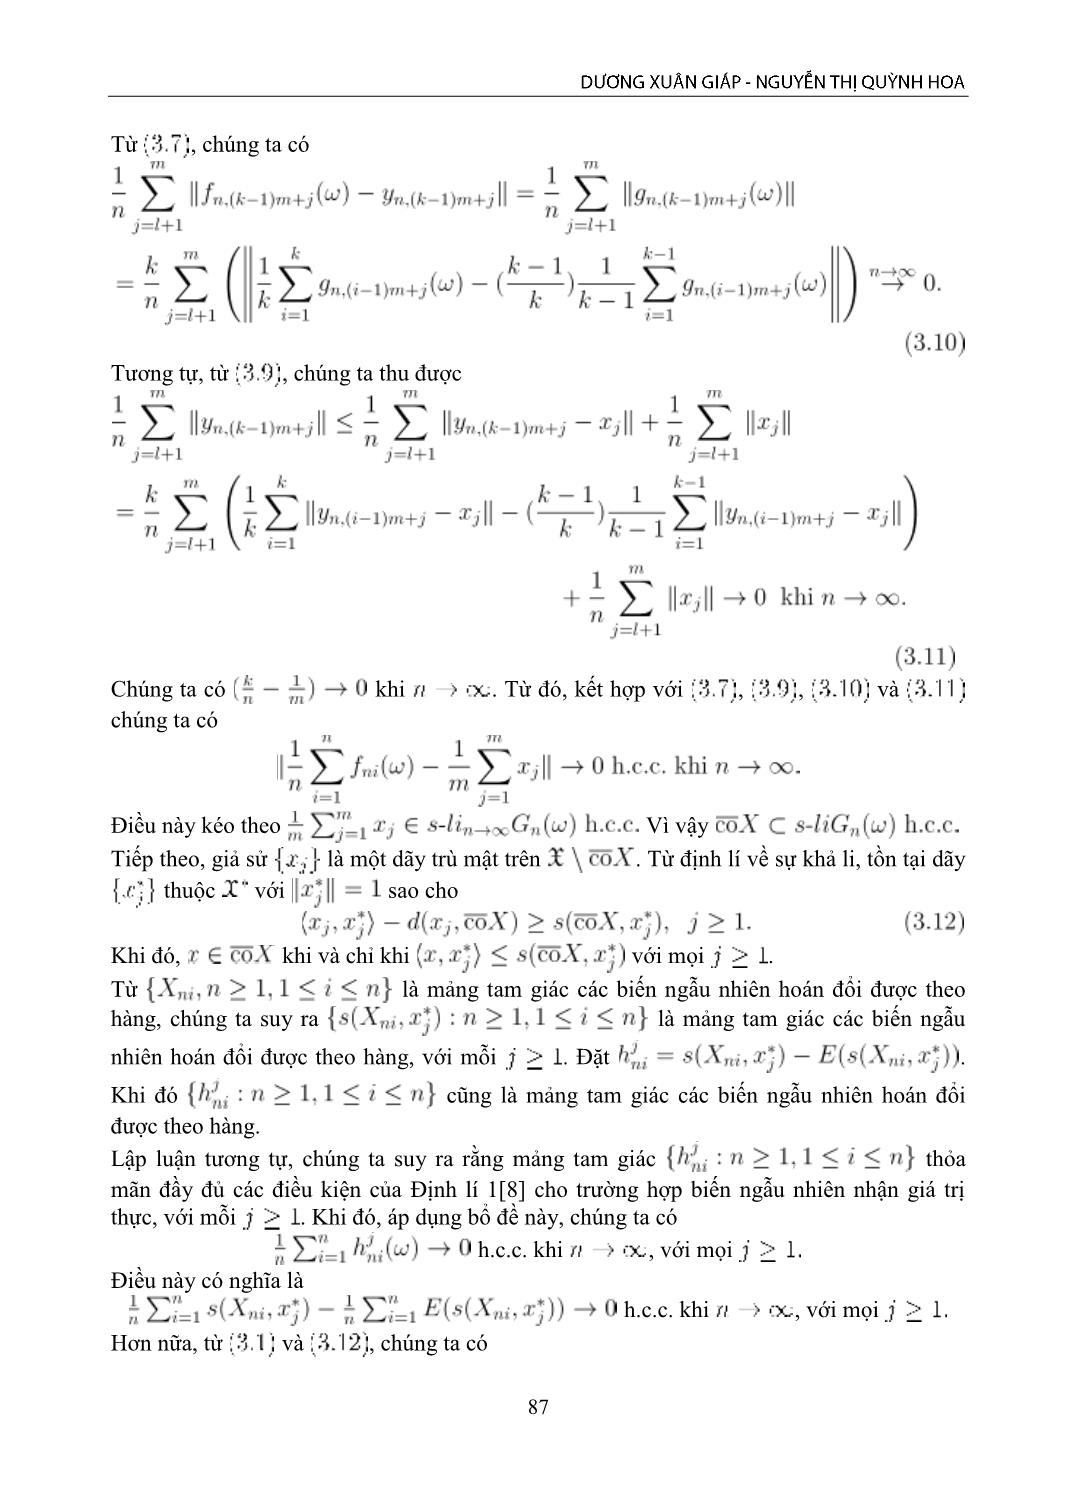 Luật số lớn dạng hội tụ Mosco cho mảng các biến ngẫu nhiên đa trị, hoán đổi được theo hàng trang 6